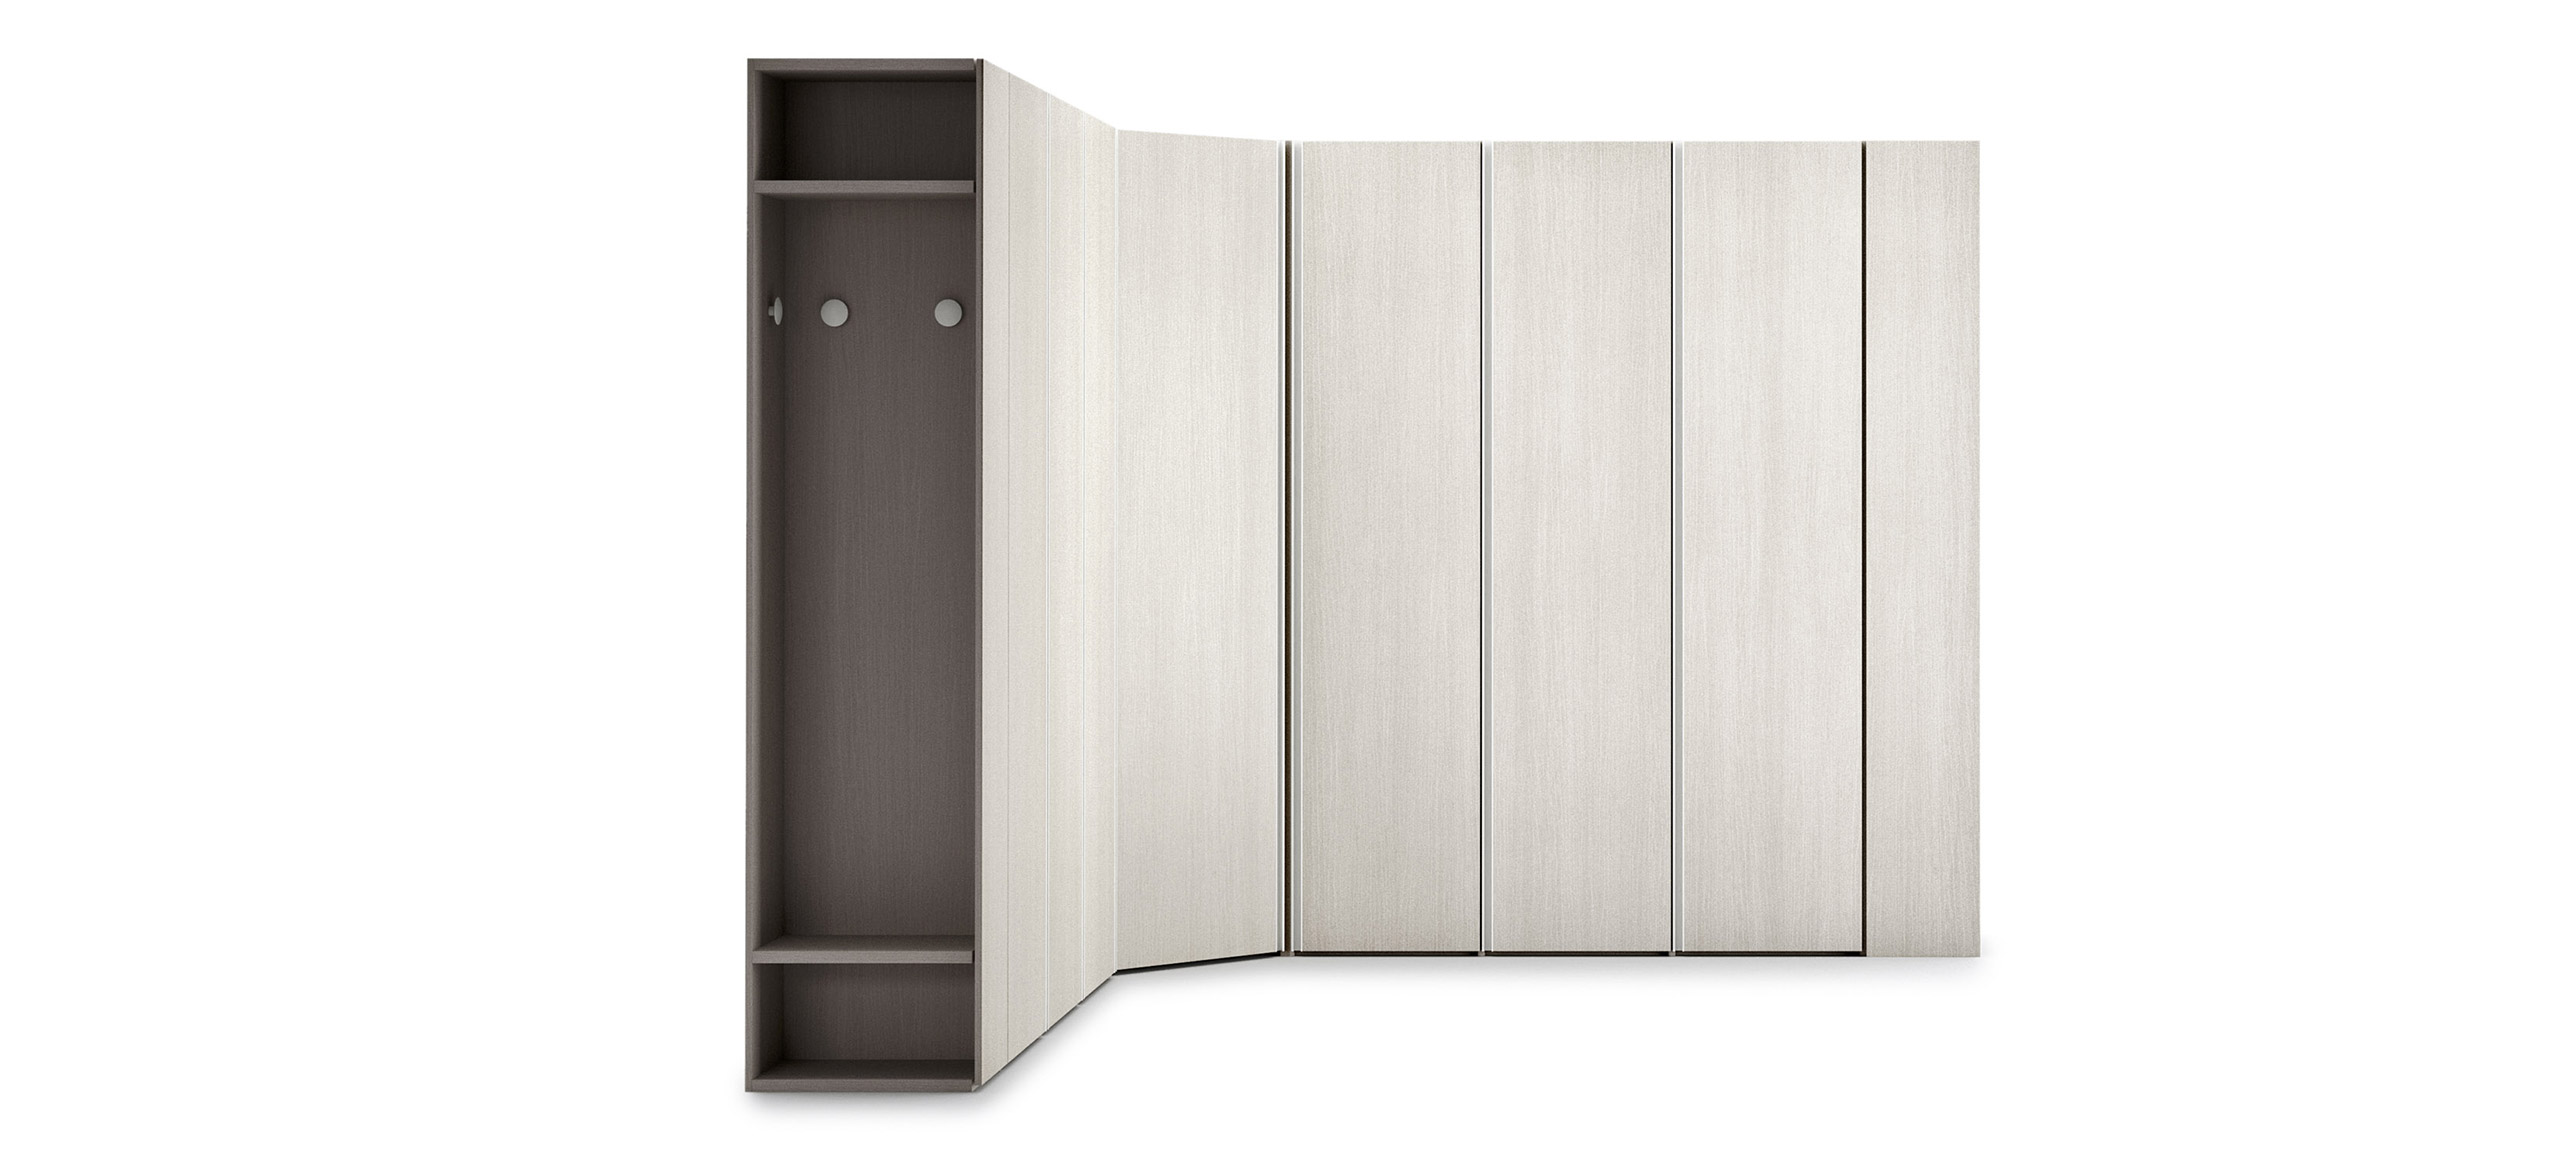 contemporary style Alu hinged-door wardrobe 4